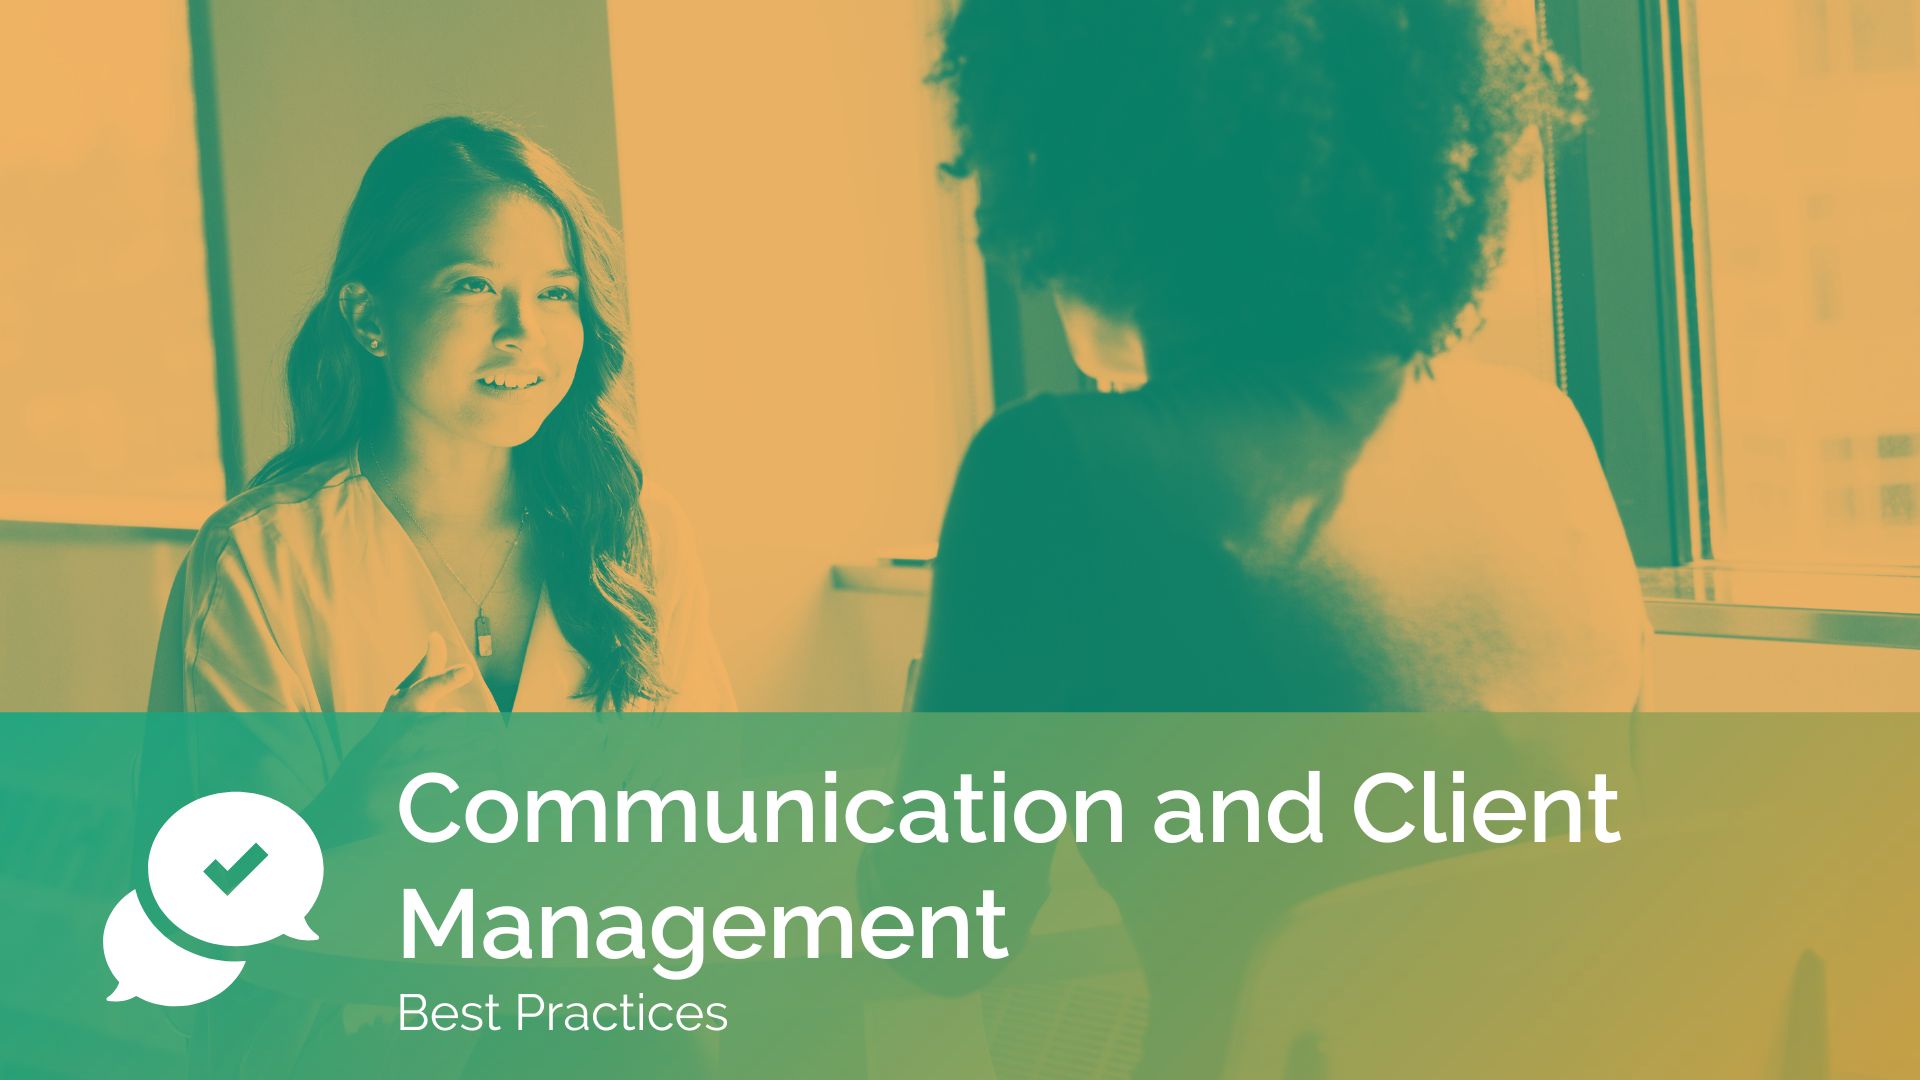 Communication and Client Management course